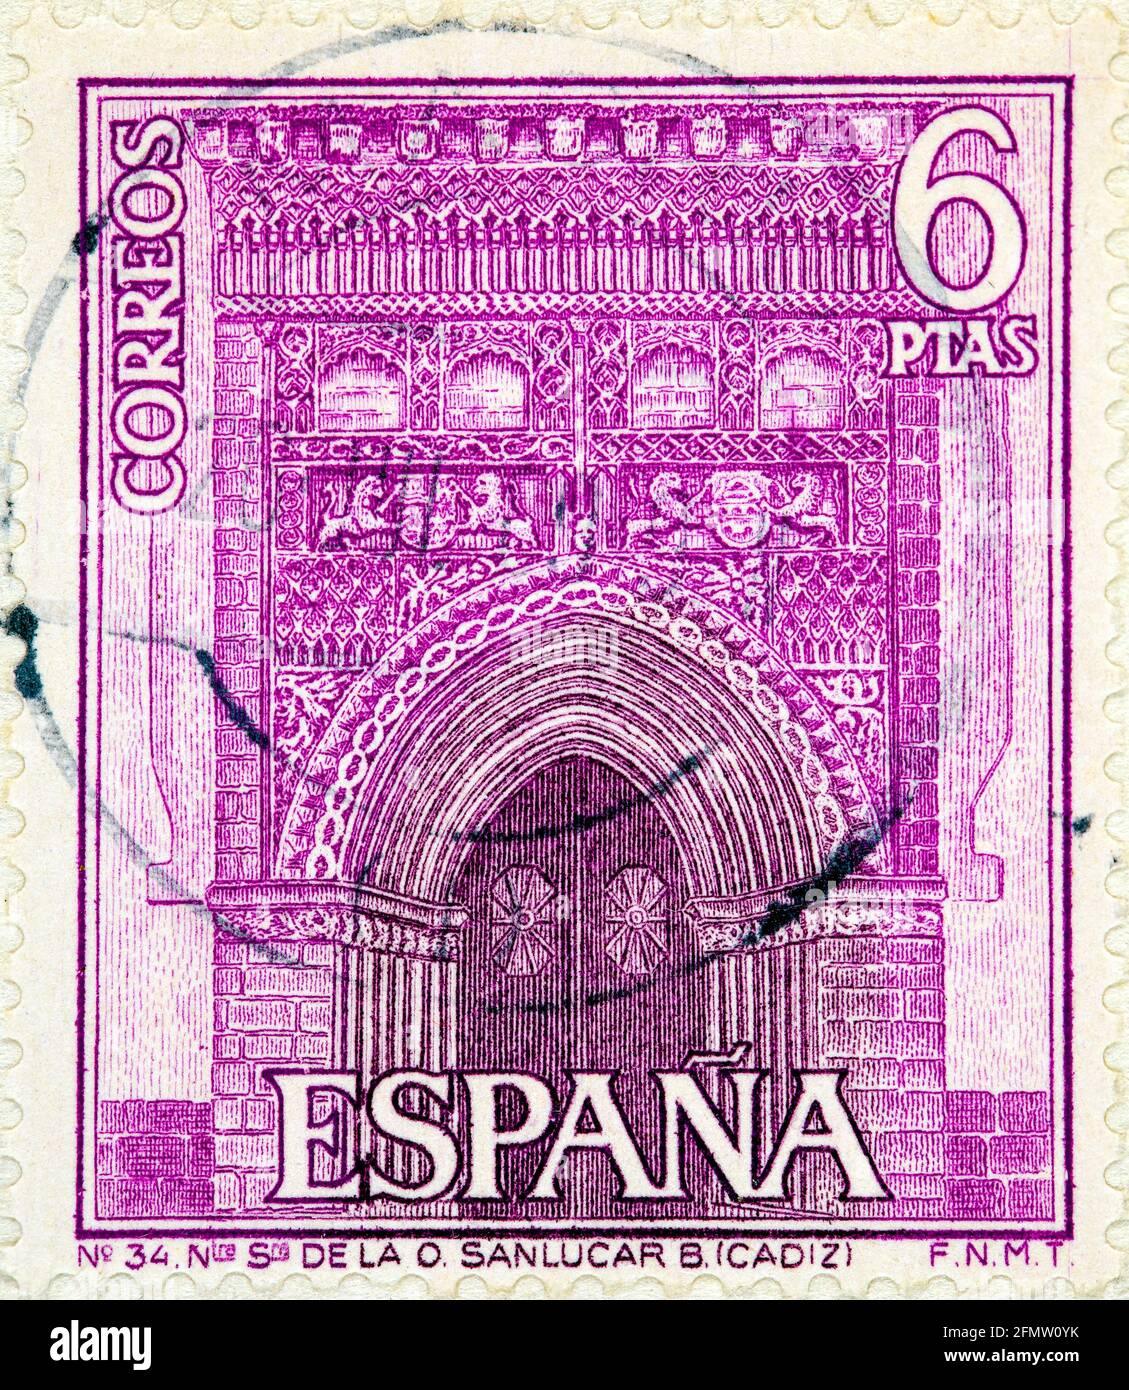 ESPAGNE, VERS 1968: Un timbre imprimé en Espagne montre le Portail de l'église Sainte Marie, Sanlucar,Cadix, vers 1968 Banque D'Images